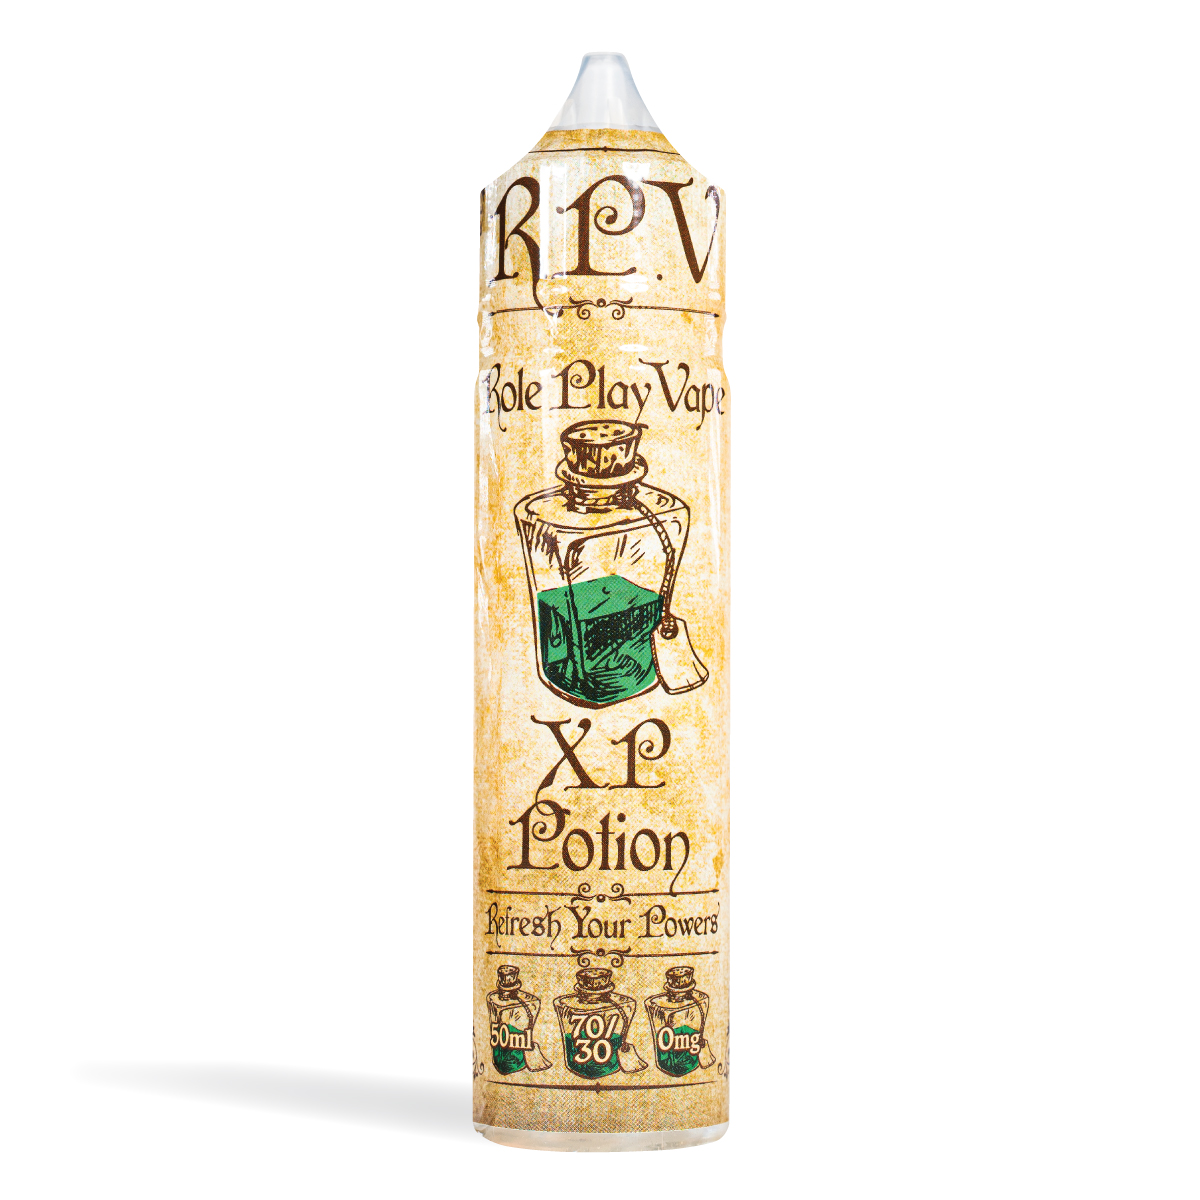 Eco vape RPV range XP Potion Flavour 50ml Shortfill